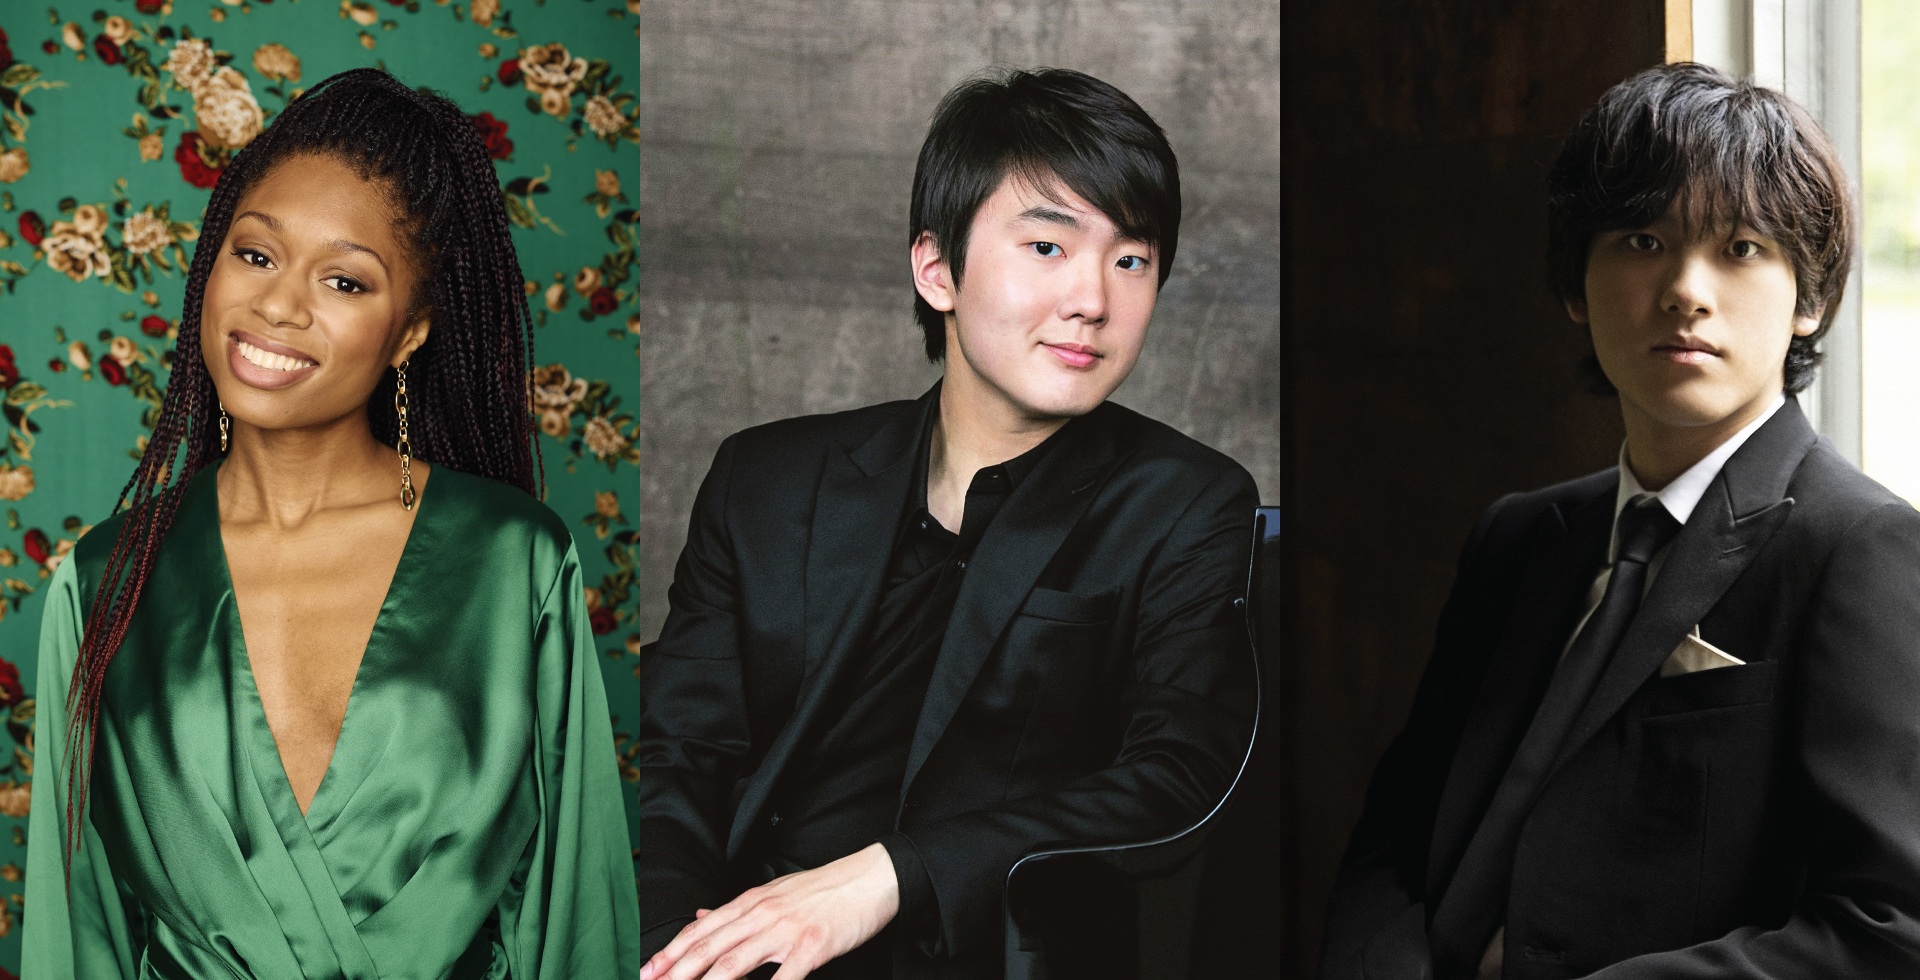 Isata Kanneh-Mason, Seong-Jin Cho, and Yunchan Lim